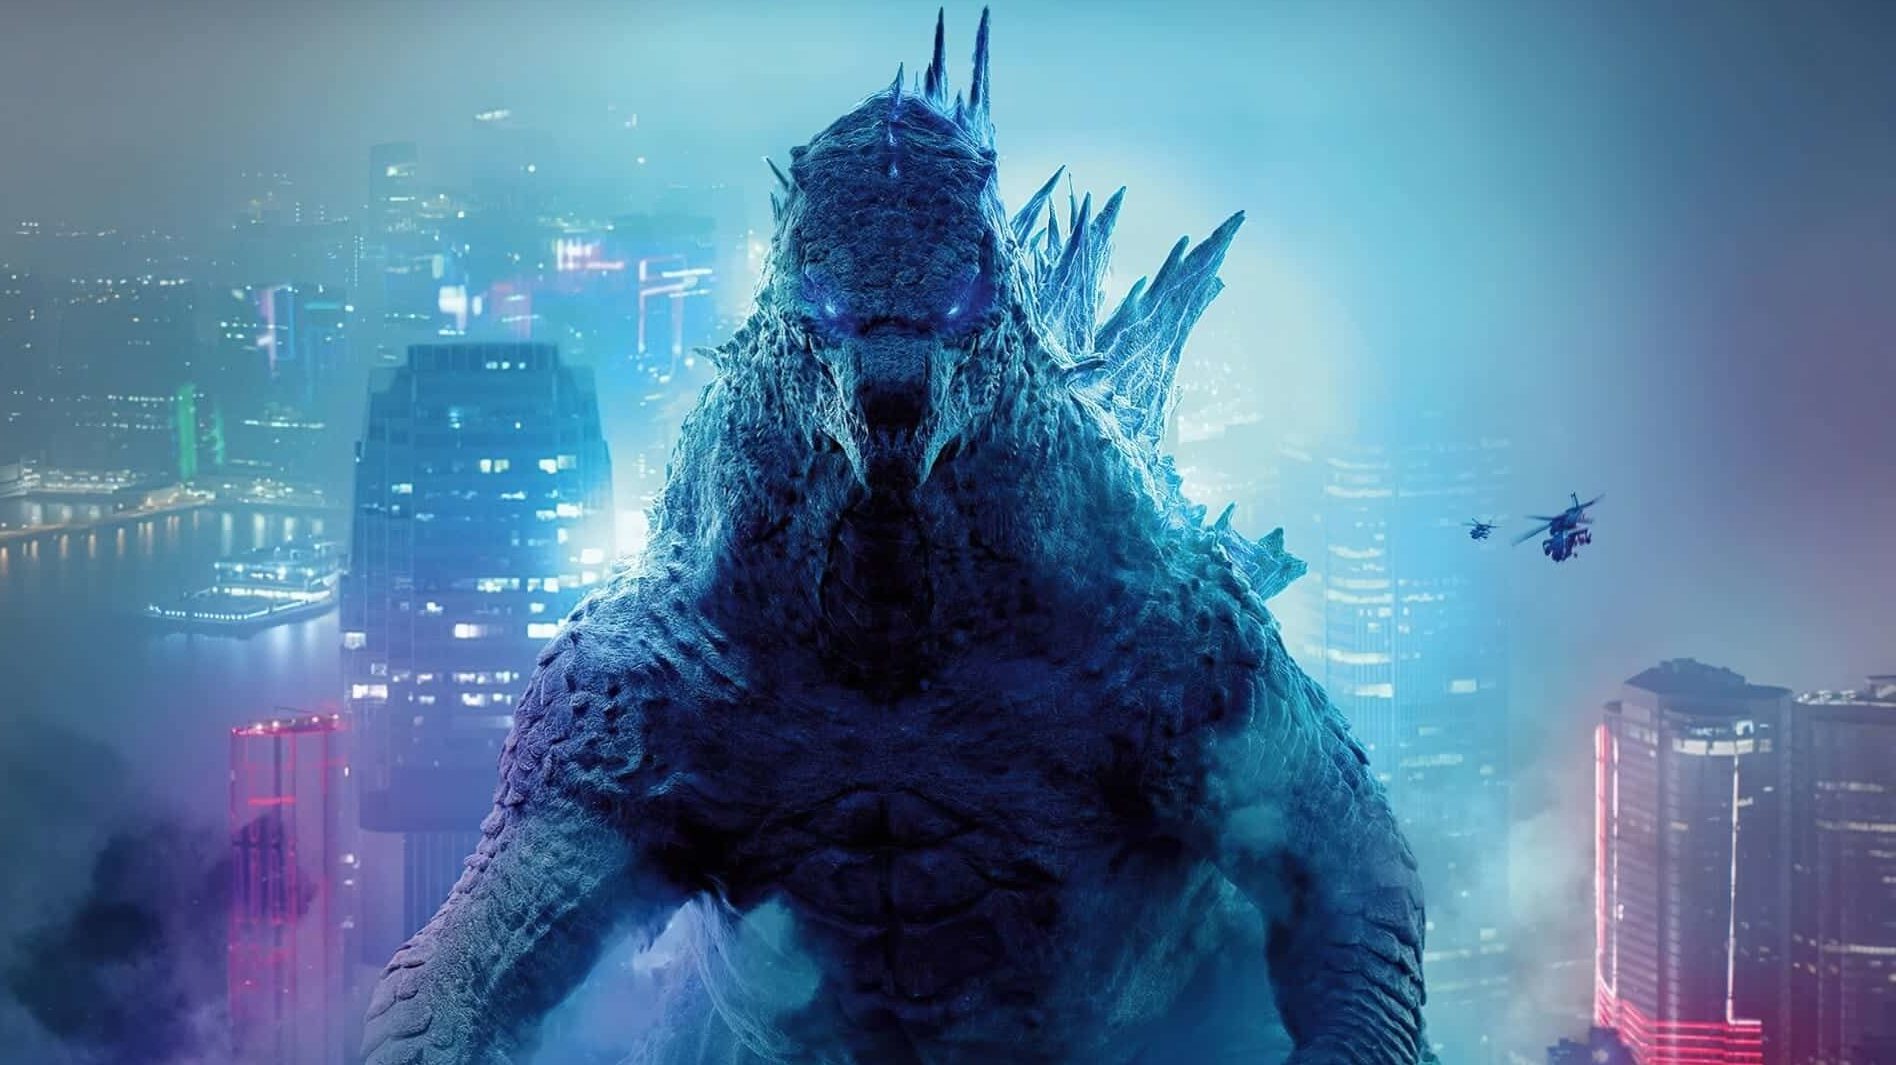 Toho recentemente anunciou um novo filme do Godzilla (Godzilla